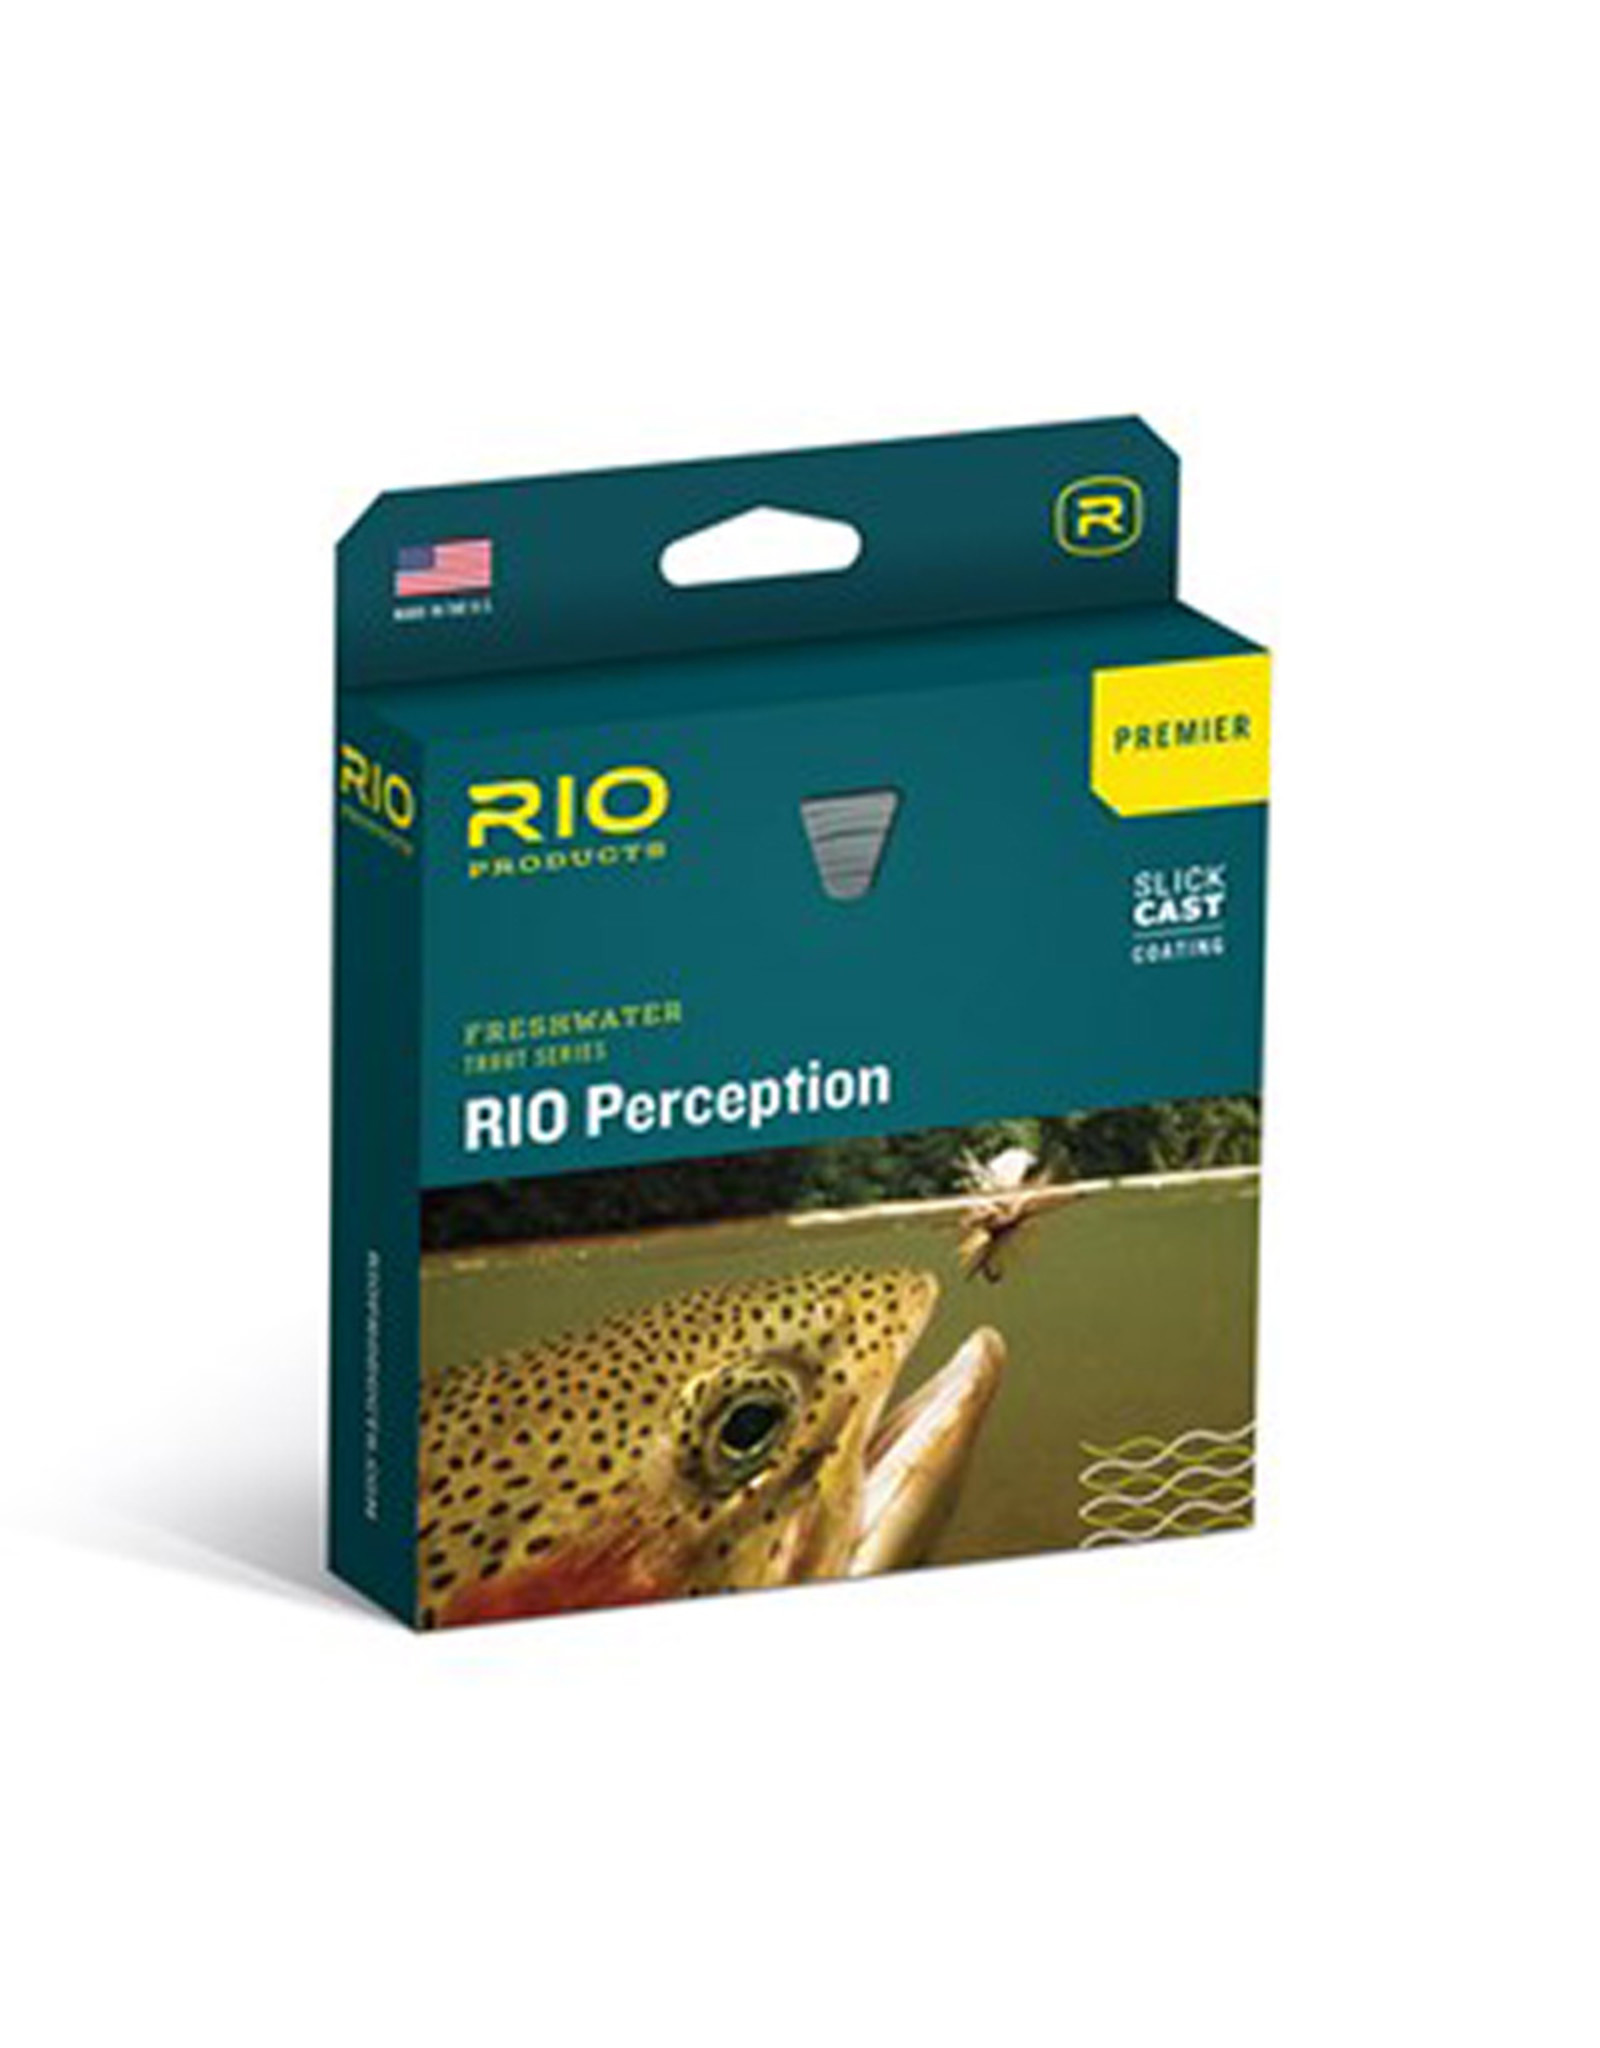 RIO Products Premier RIO Perception